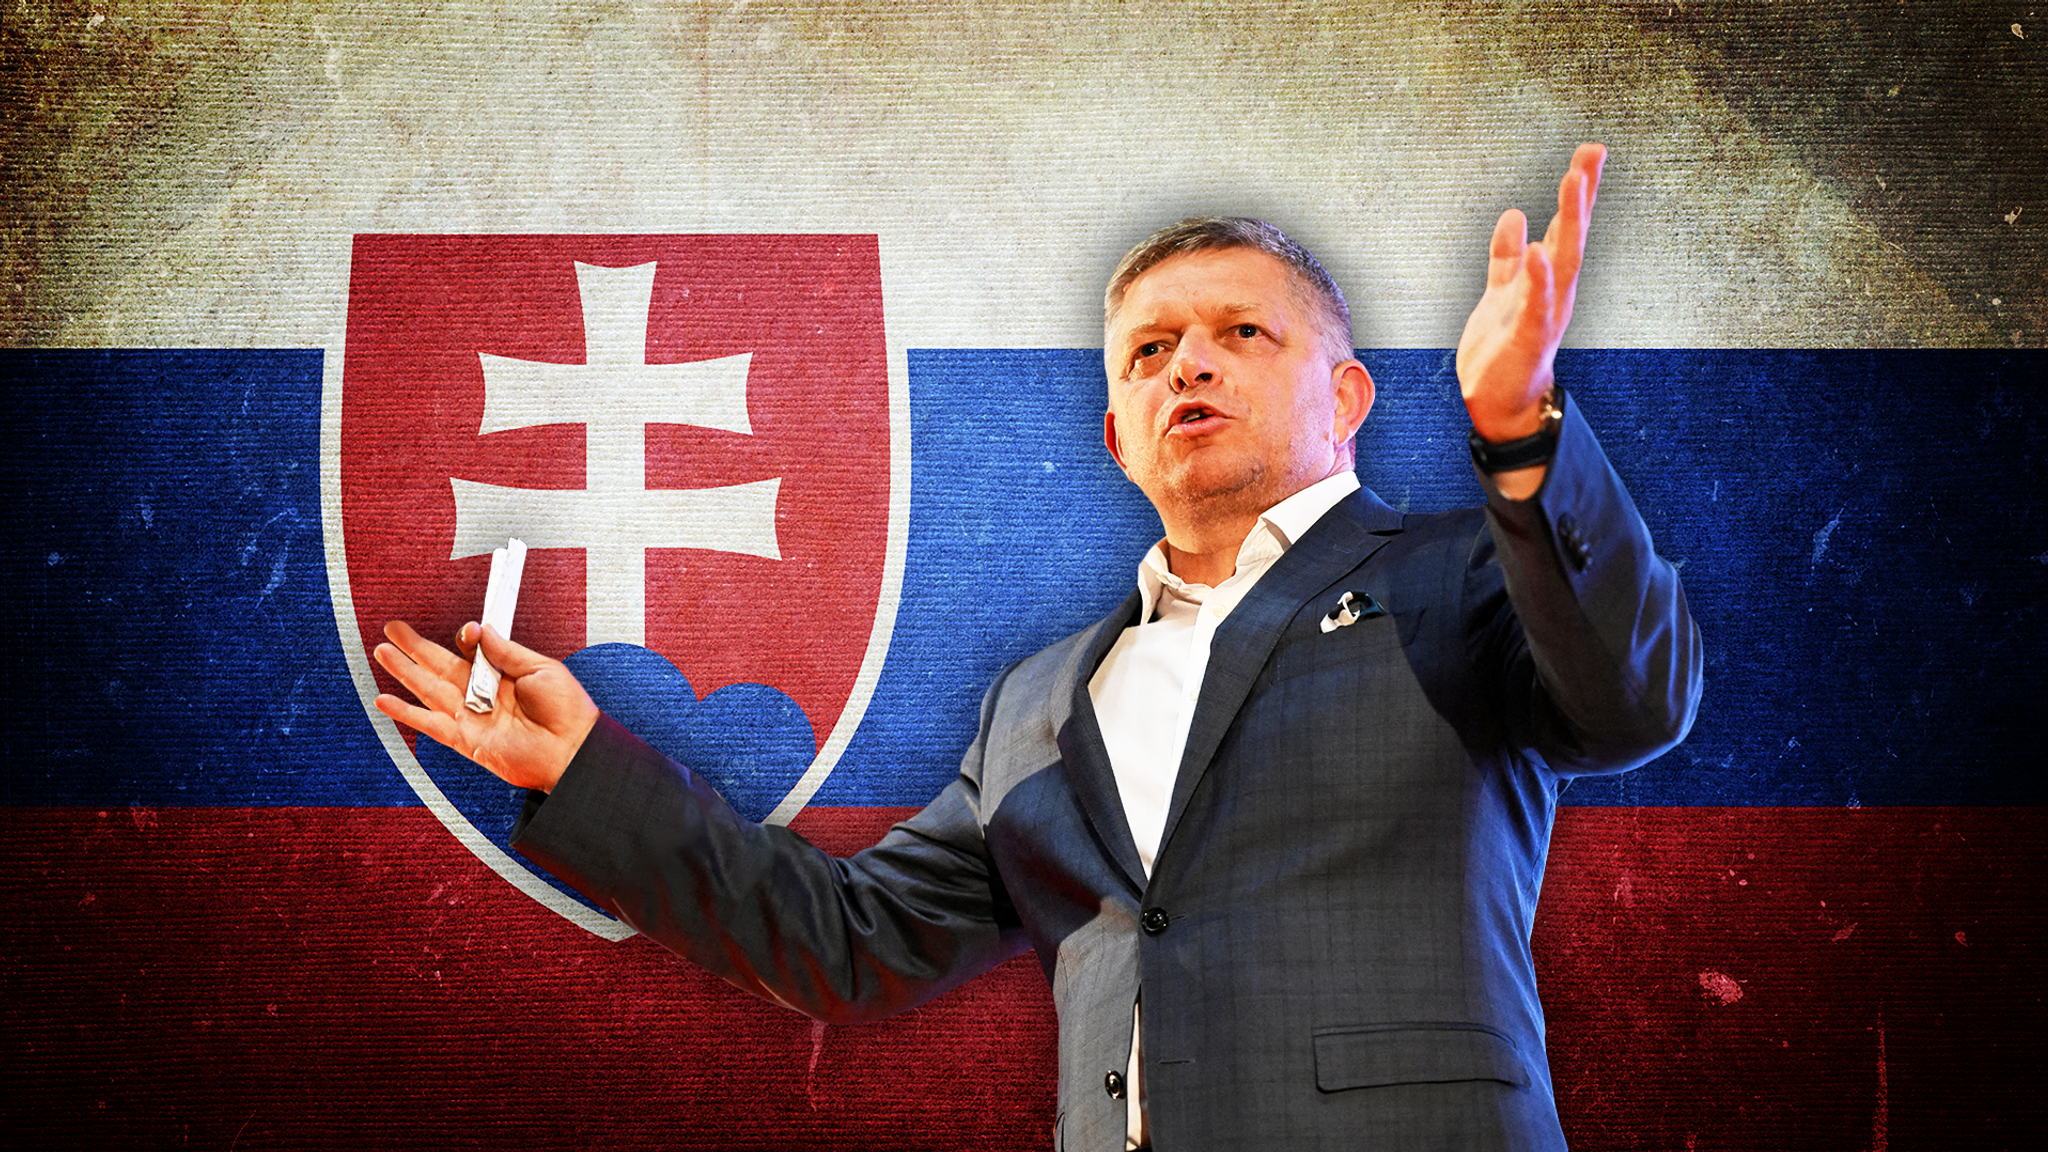 Σλοβακία εκλογές: Αποτέλεσμα που φέρνει στην εξουσία υποστηρικτή του Πούτιν